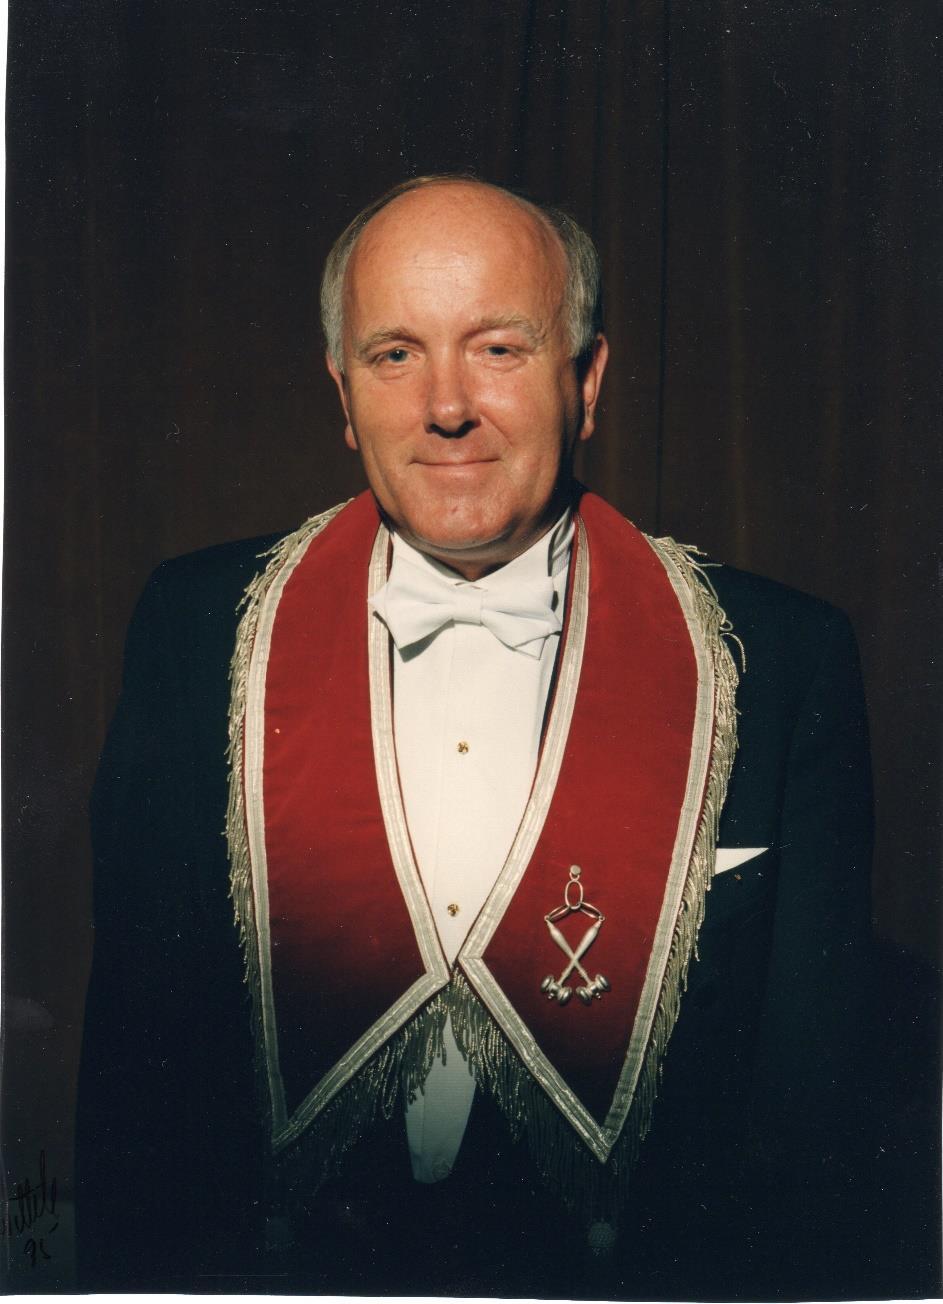 TOR HERBERT CARLSEN var Logens fjerde Overmester, fra 1993 til 1995. Han ble født 17.3.1944 og døde 24.4.2011.